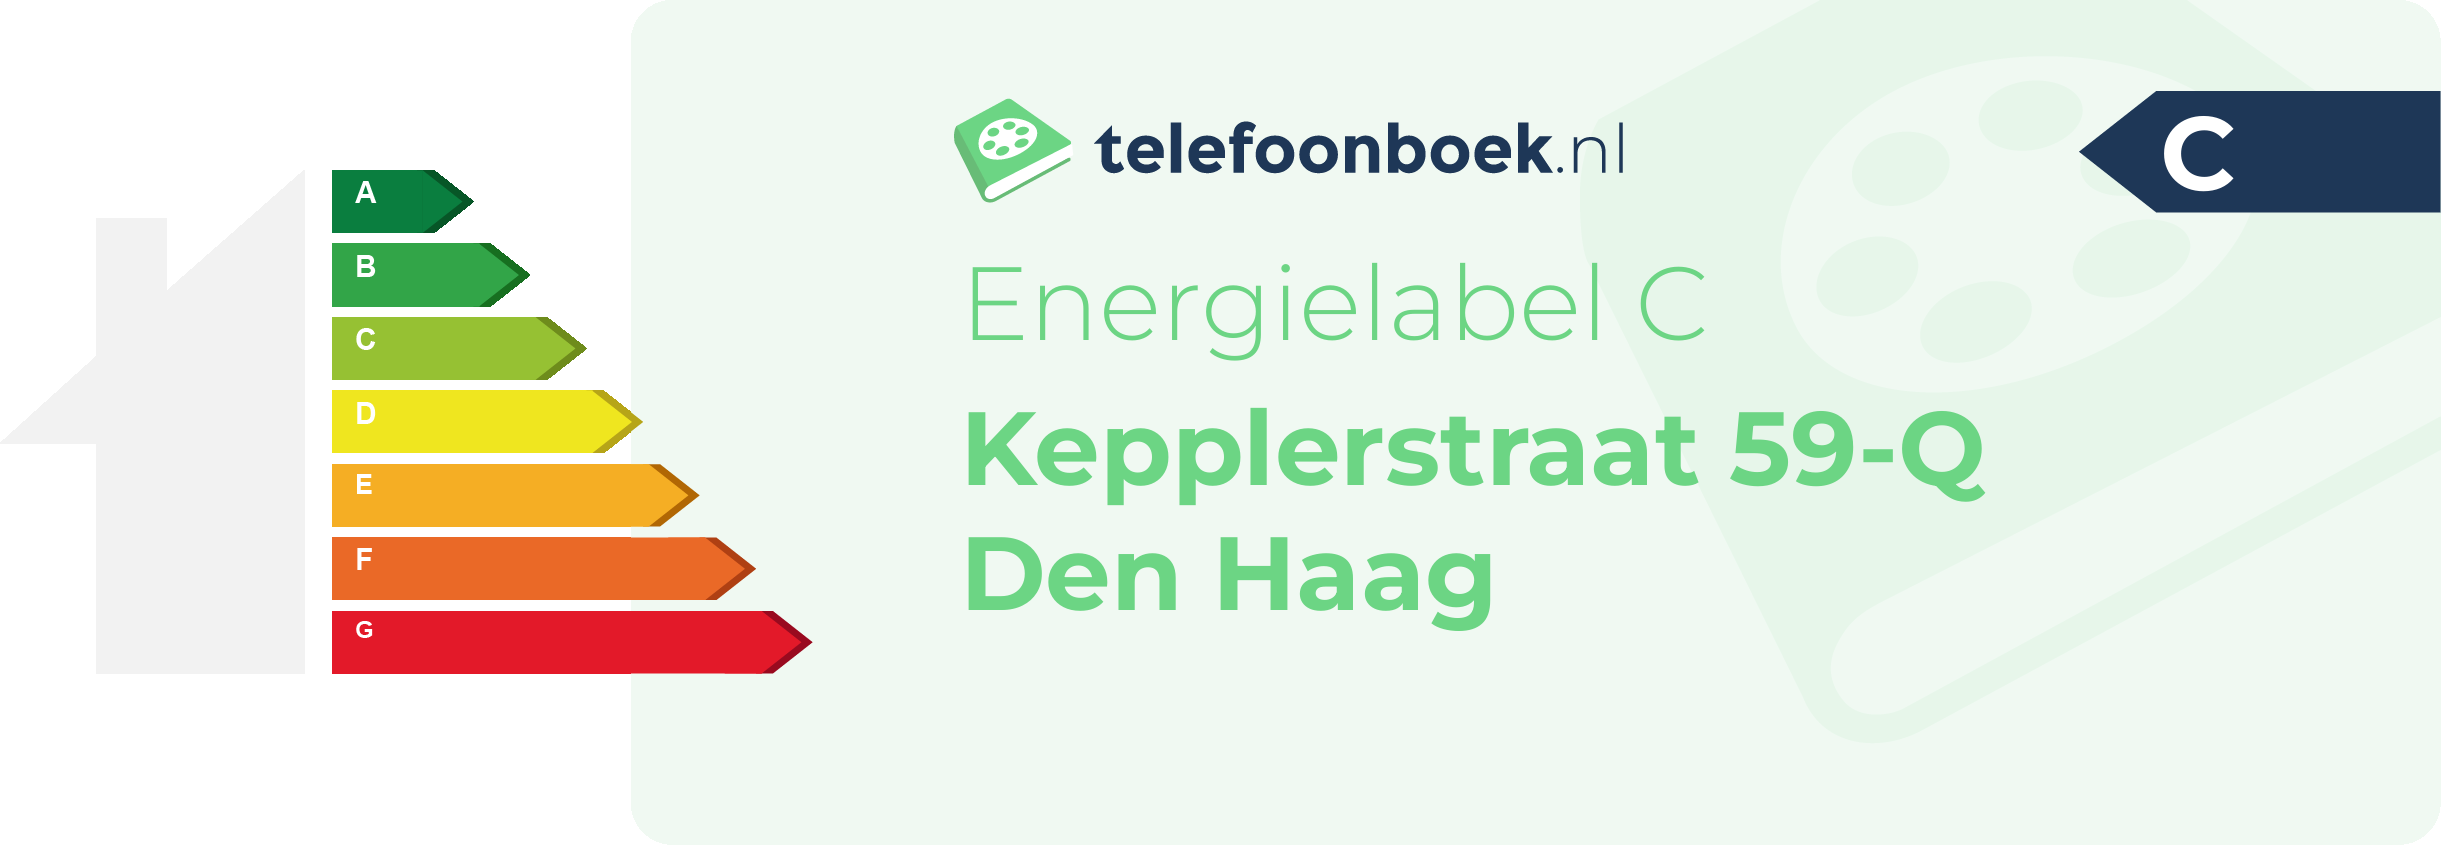 Energielabel Kepplerstraat 59-Q Den Haag